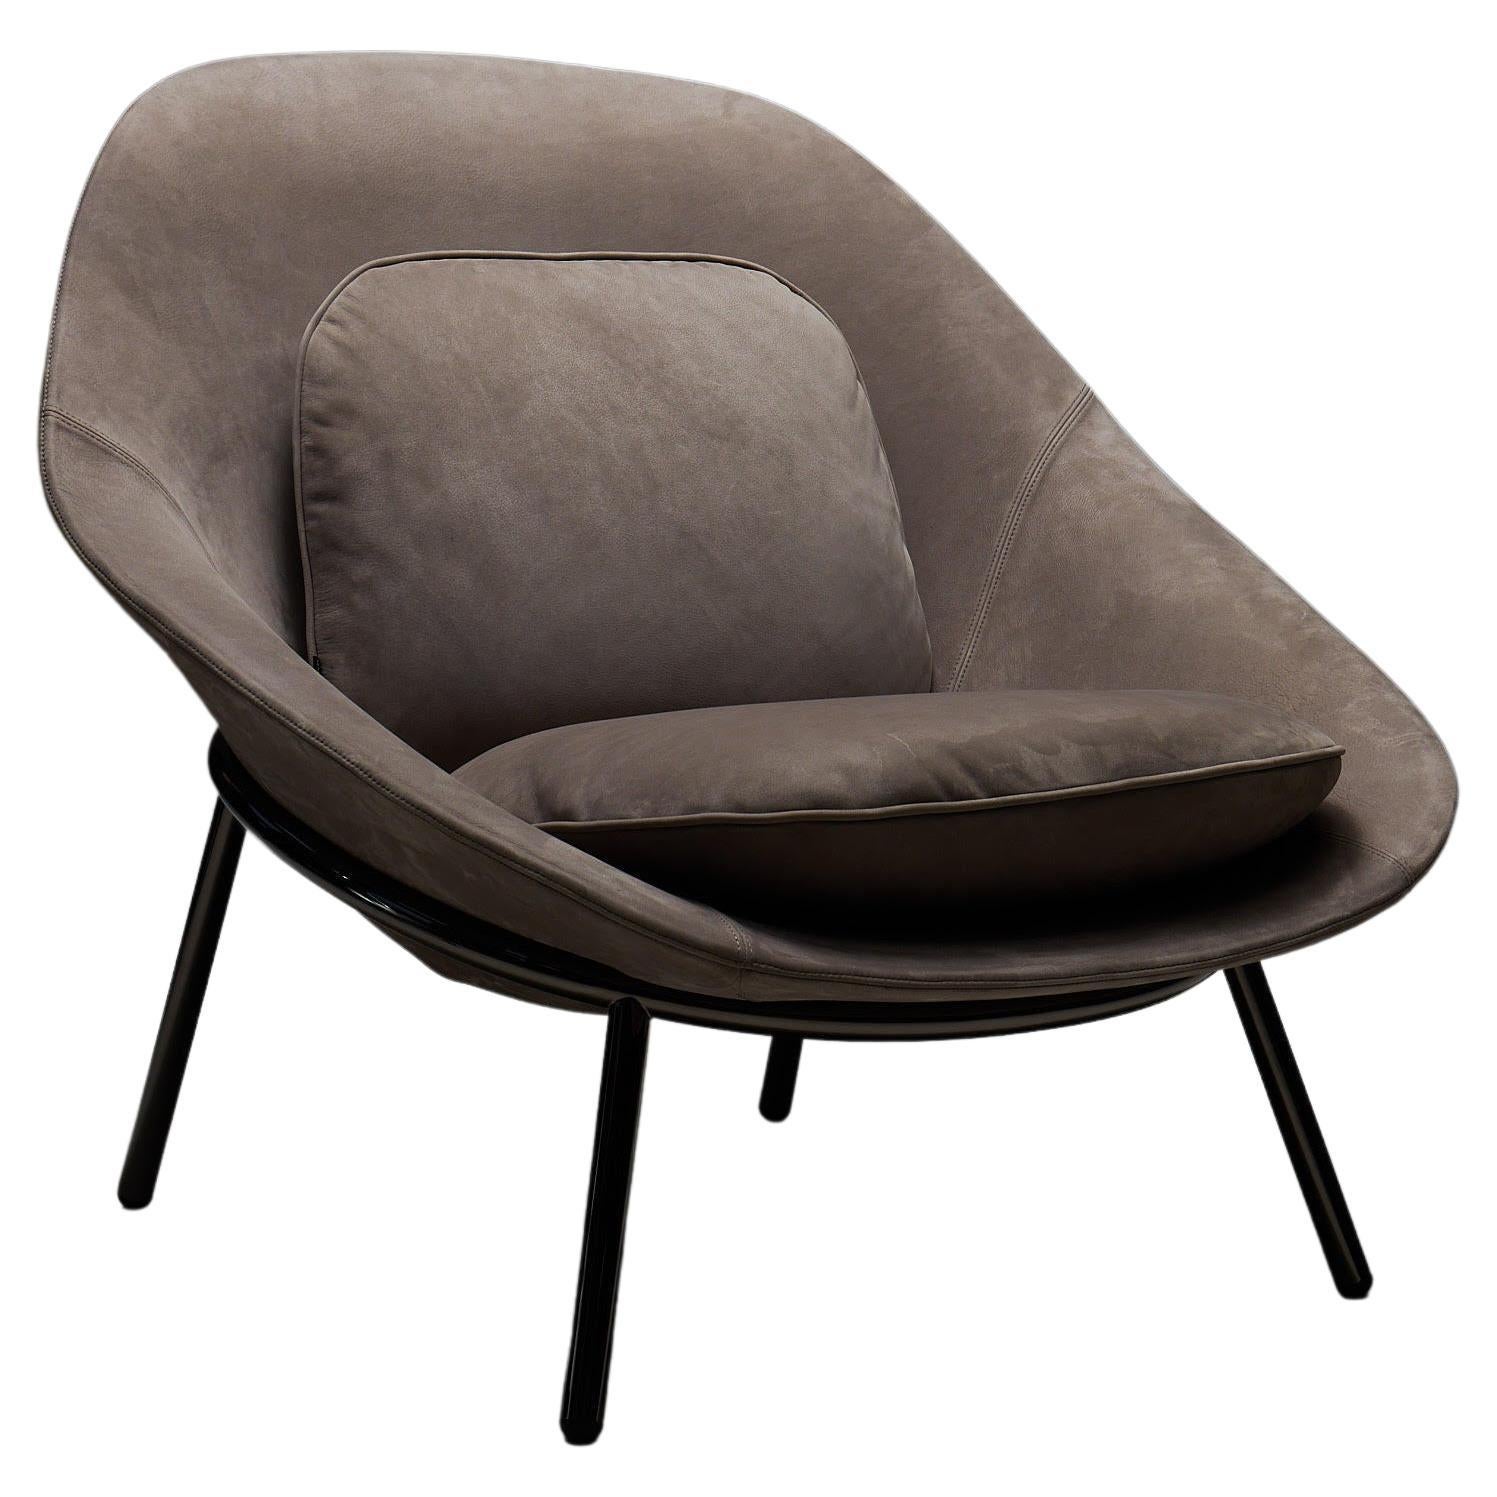 La Manufacture-Paris Amphora Lounge Chair Designed by Noé Duchaufour-Lawrance